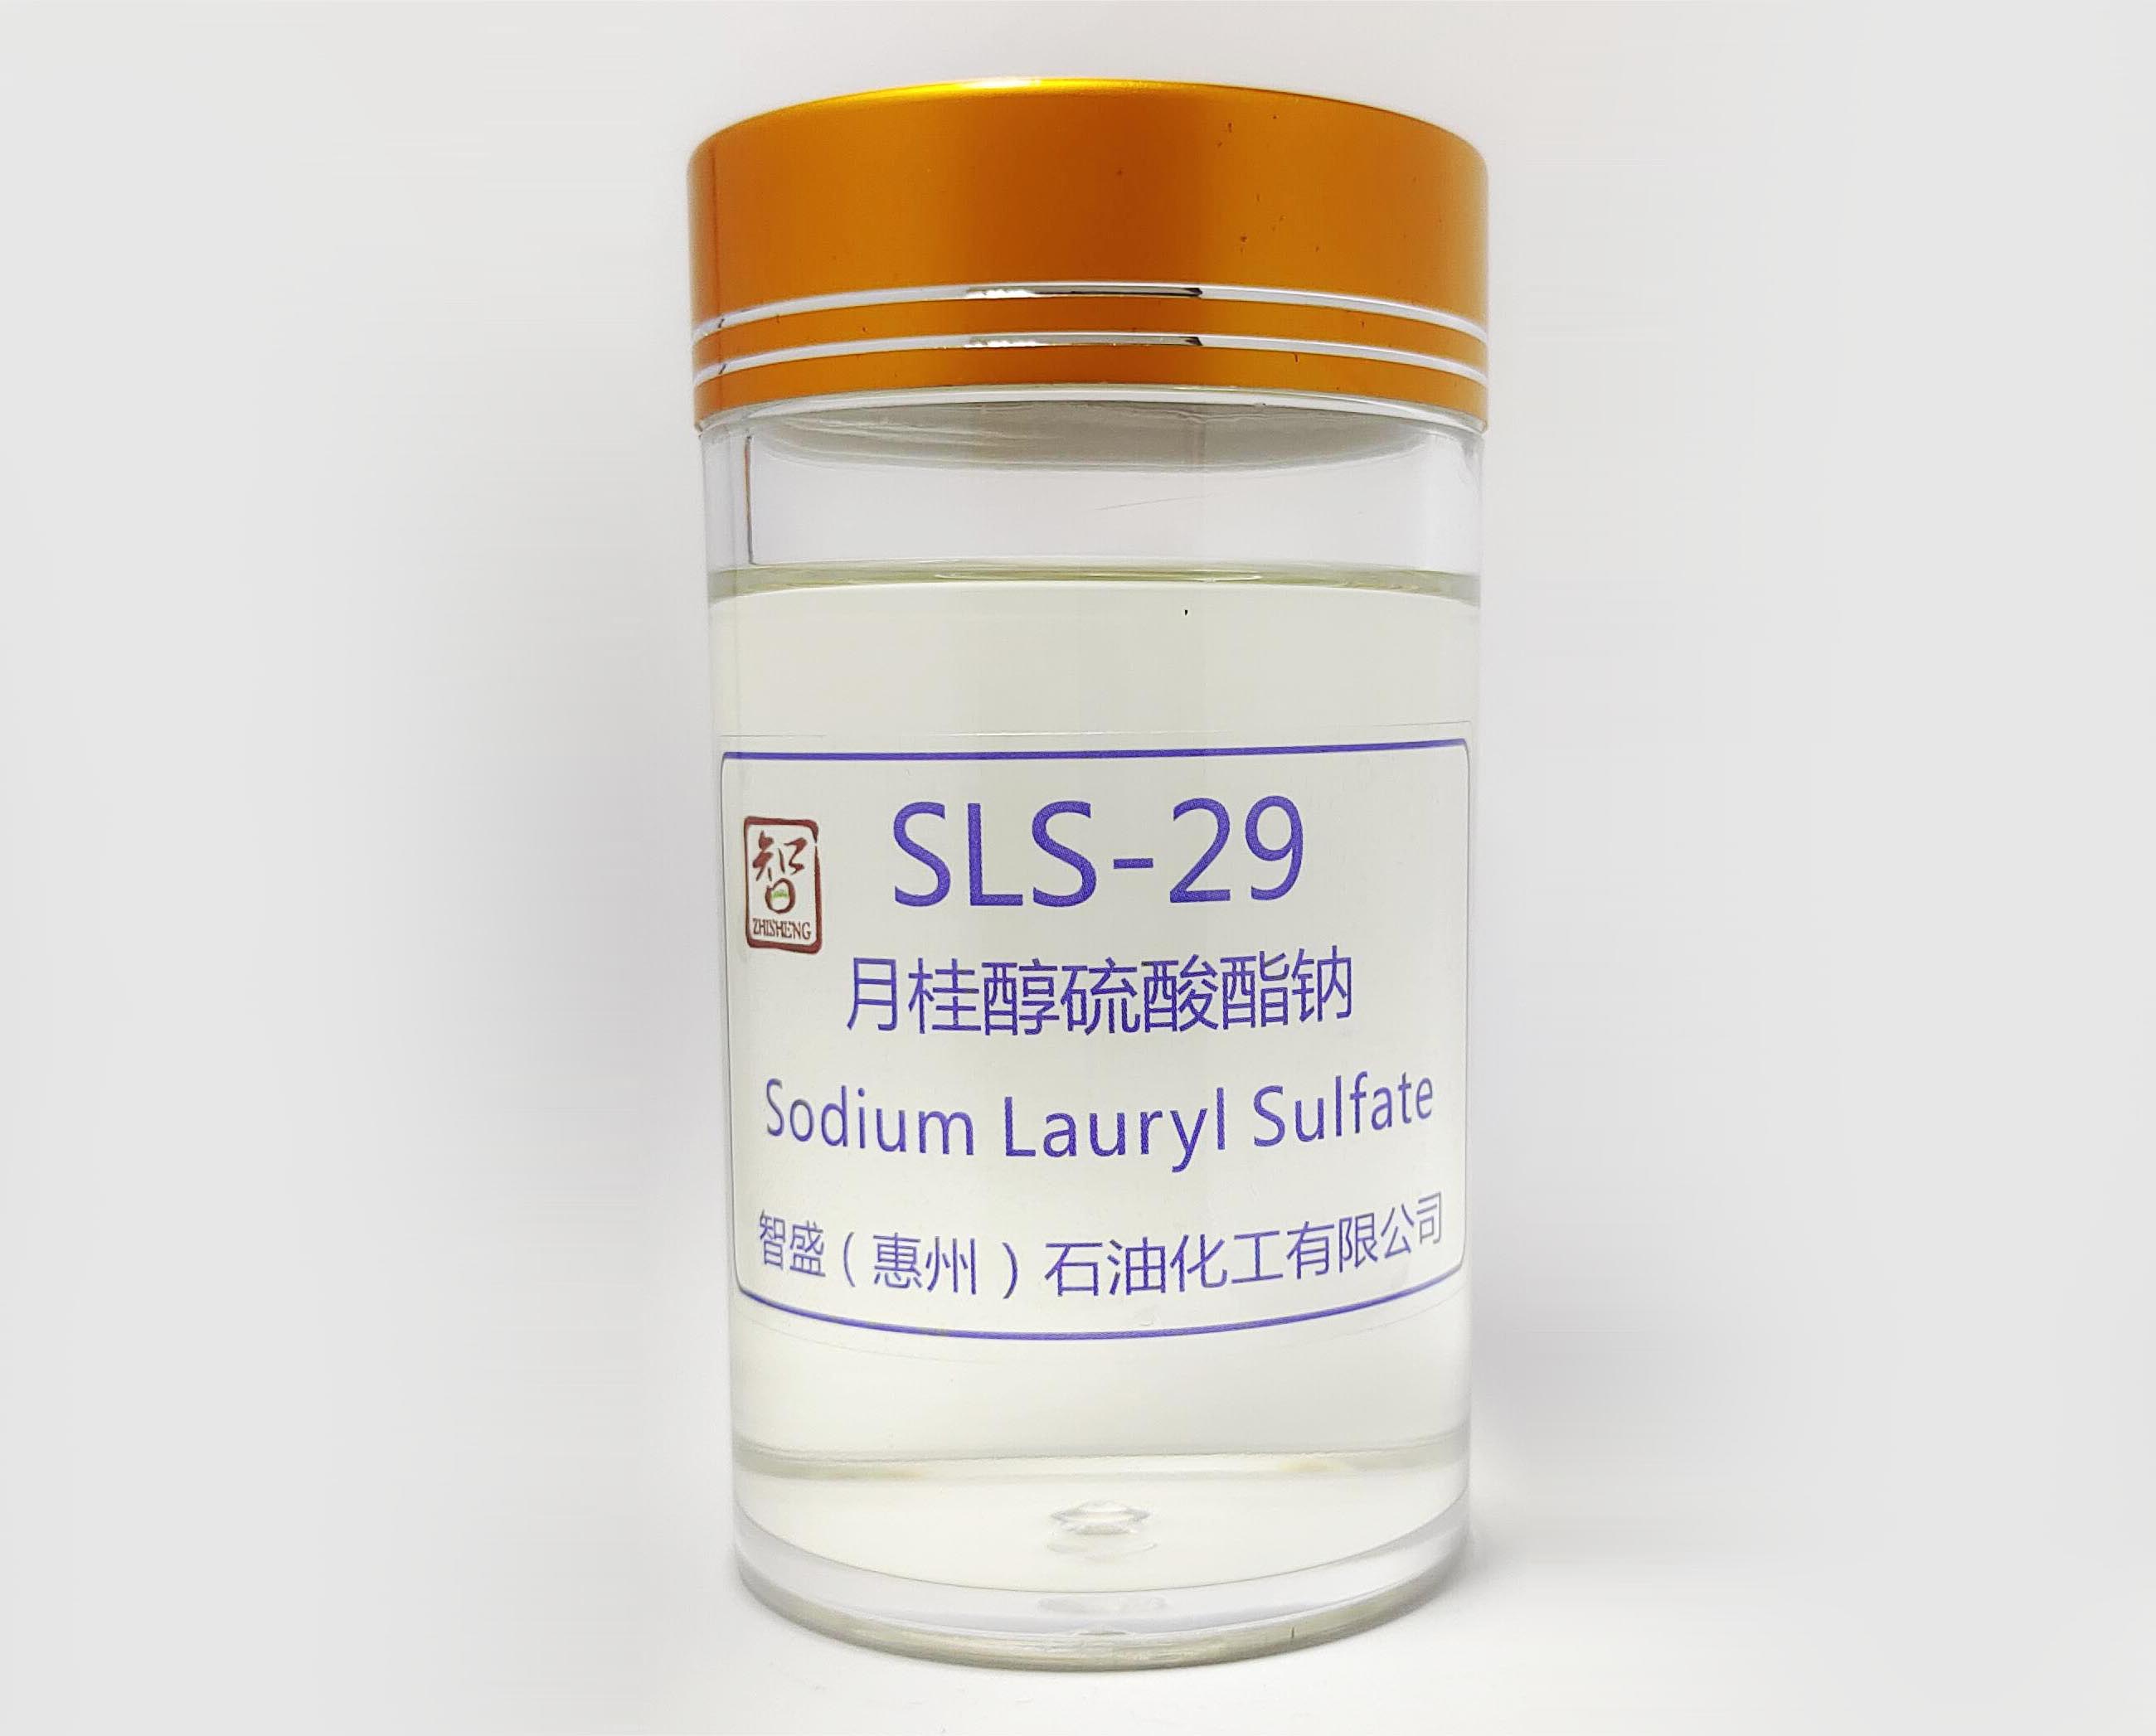 月桂醇硫酸酯钠(K12-29/SLS-29)